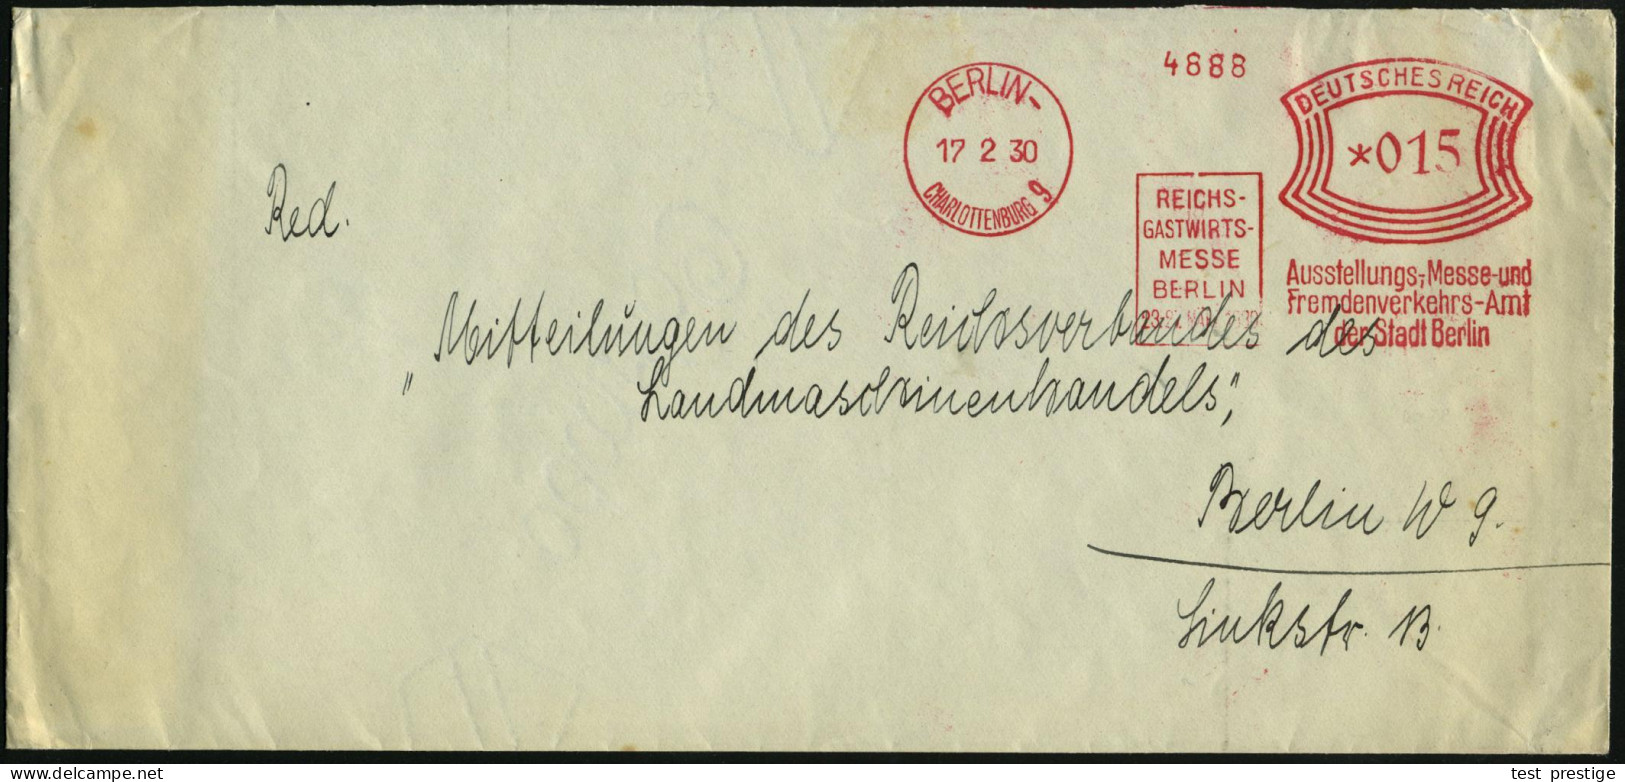 BERLIN-/ CHARLOTTENBURG 9/ REICHS-/ GASTWIRTS-/ MESSE/ 23.-27.MÄRZ 1930/ Ausstellungs-,Messe-..Amt 1930 (17.2.) Seltener - Other